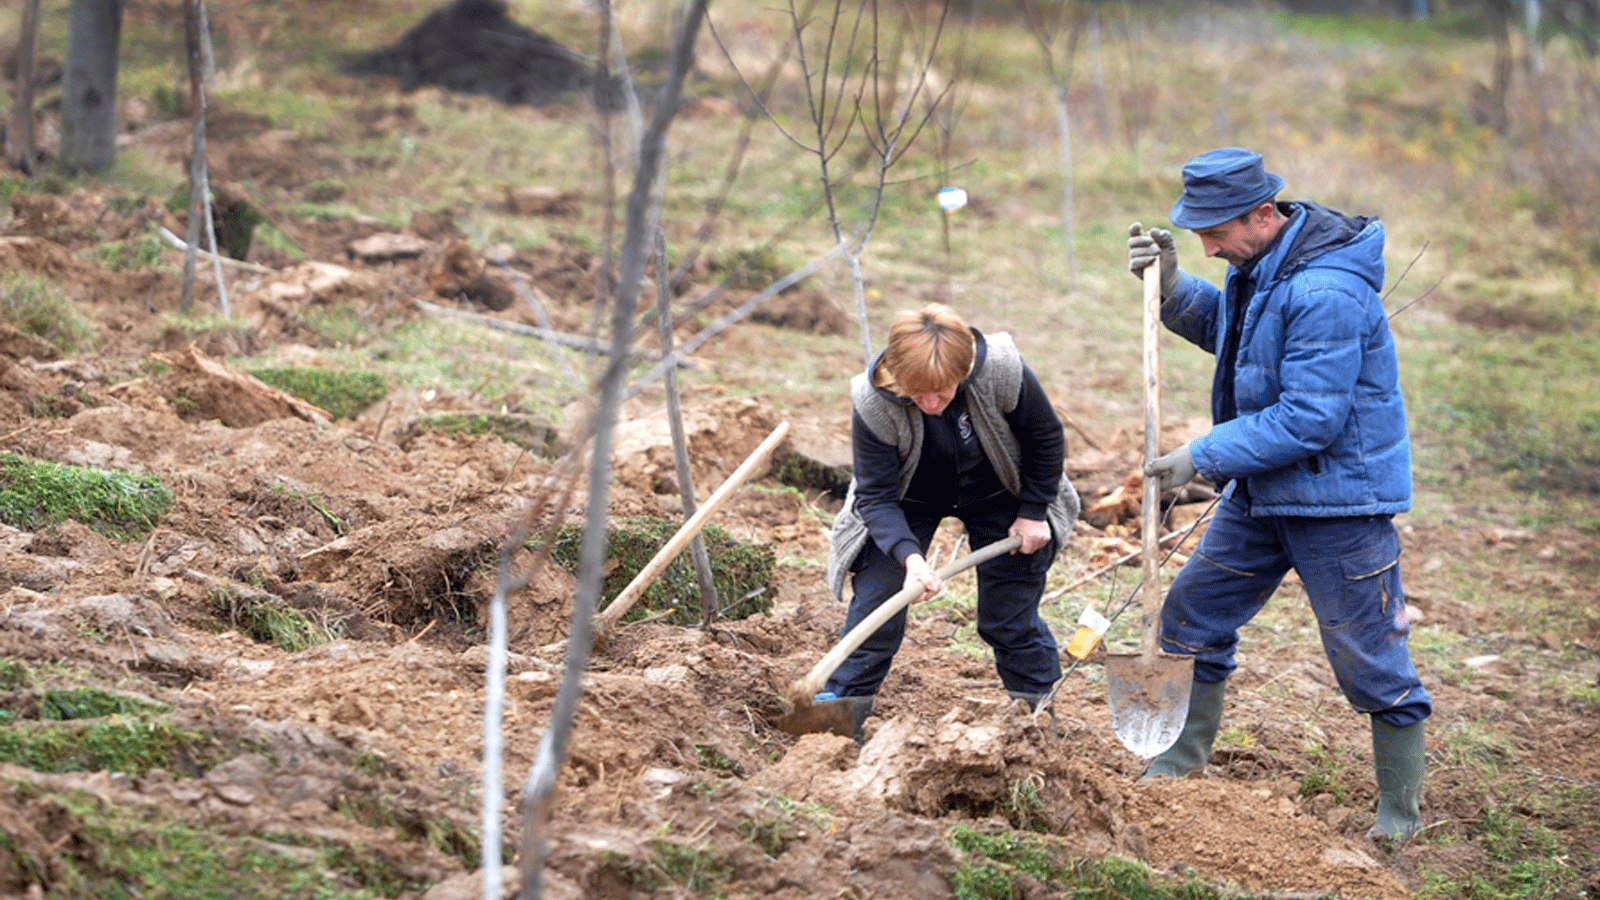 ميودراغ ماركوفيتش وزوجته يلينا يزرعان 300 شتلة من البرقوق في كروبانج، صربيا.(FAO)